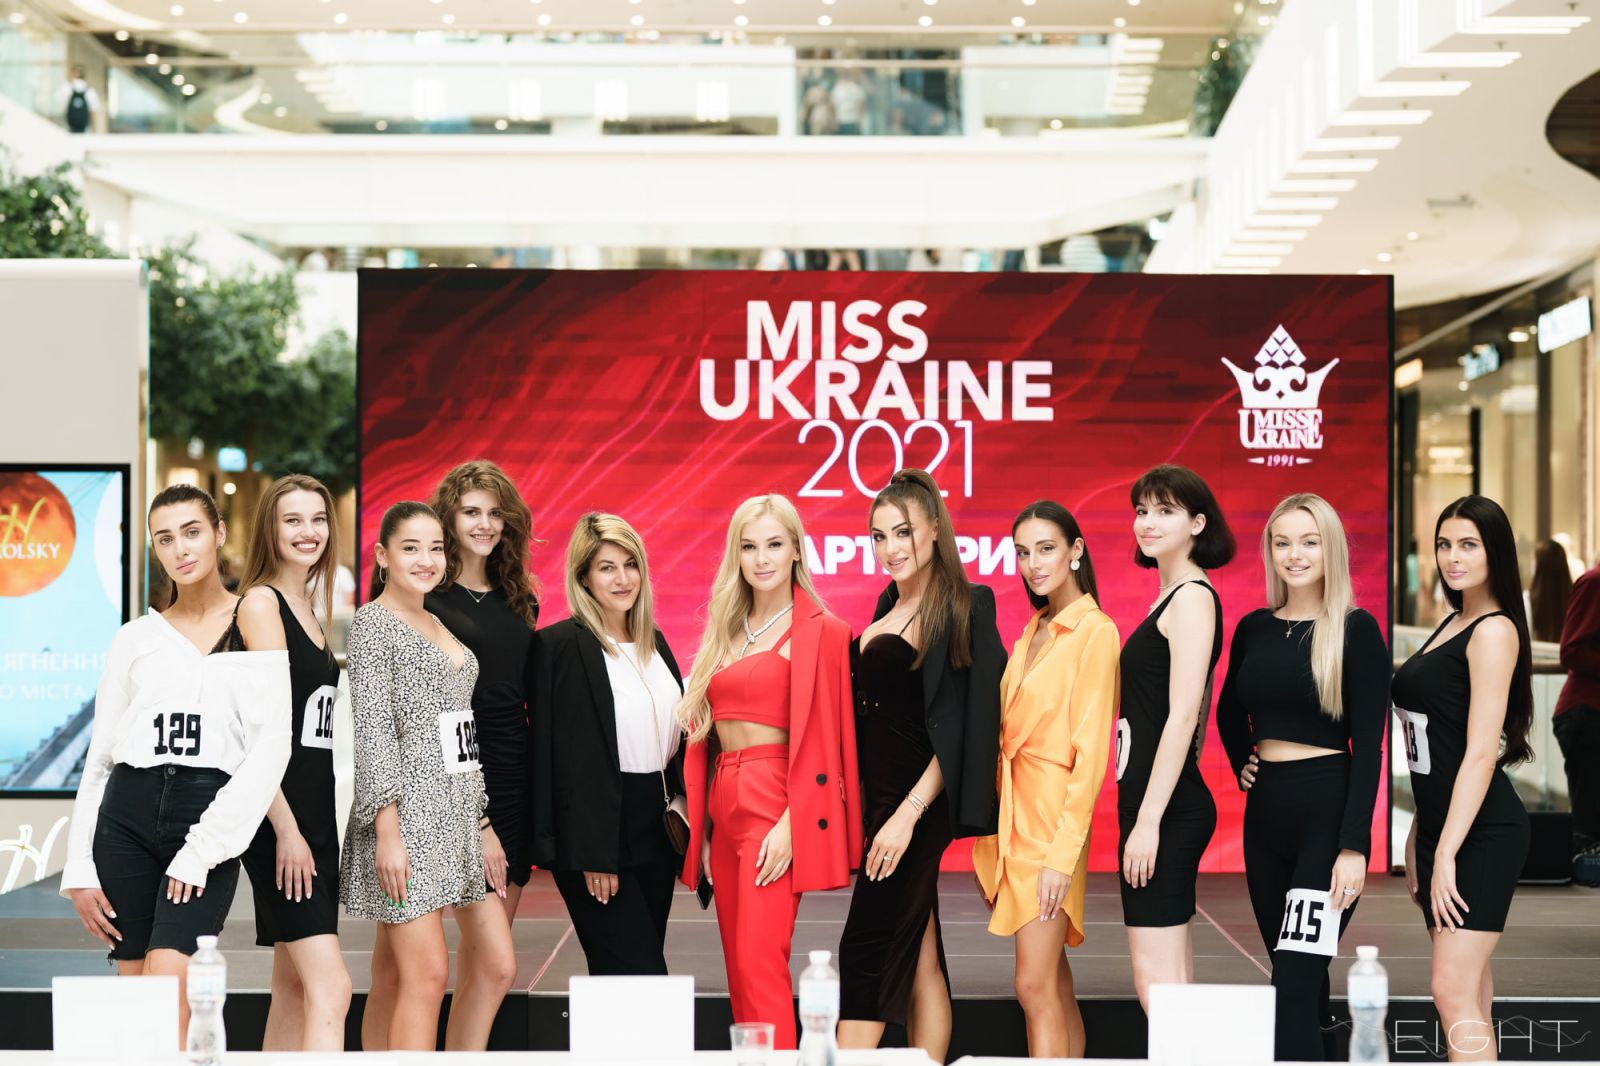 На конкурс "Мисс Украина", кастинг которого прошел в Харькове, не могут найти девушек без проблем с репутацией